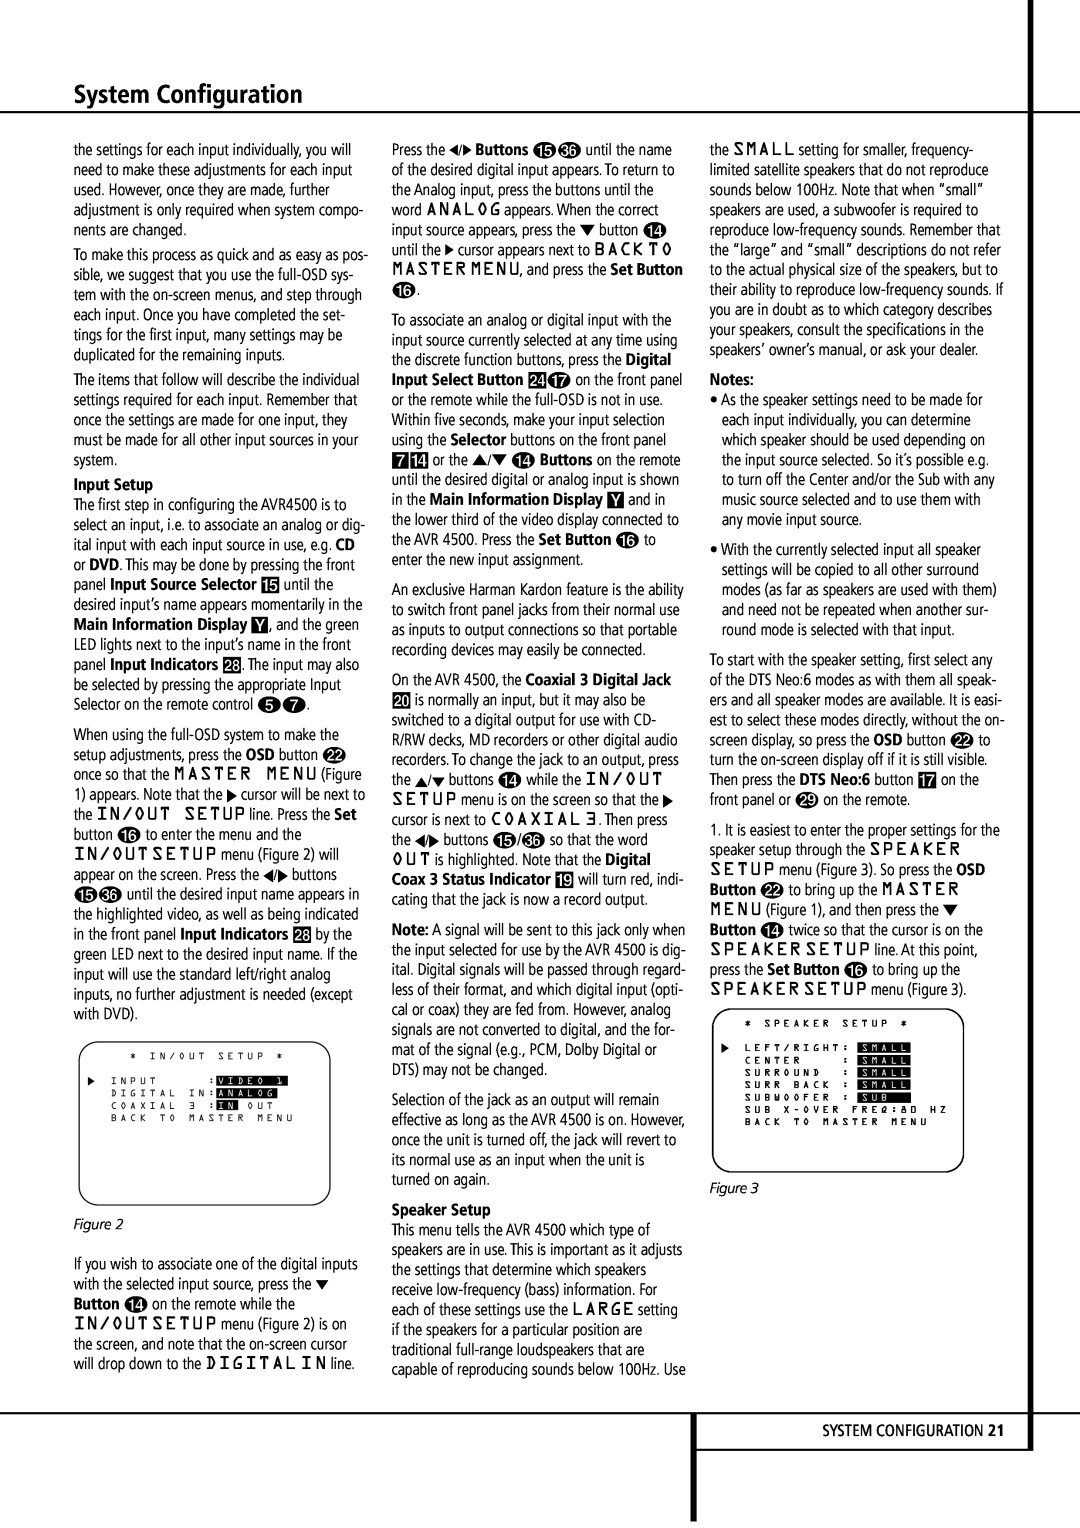 Harman-Kardon AVR4500 owner manual System Configuration, Input Setup, Speaker Setup, Notes, Figure 